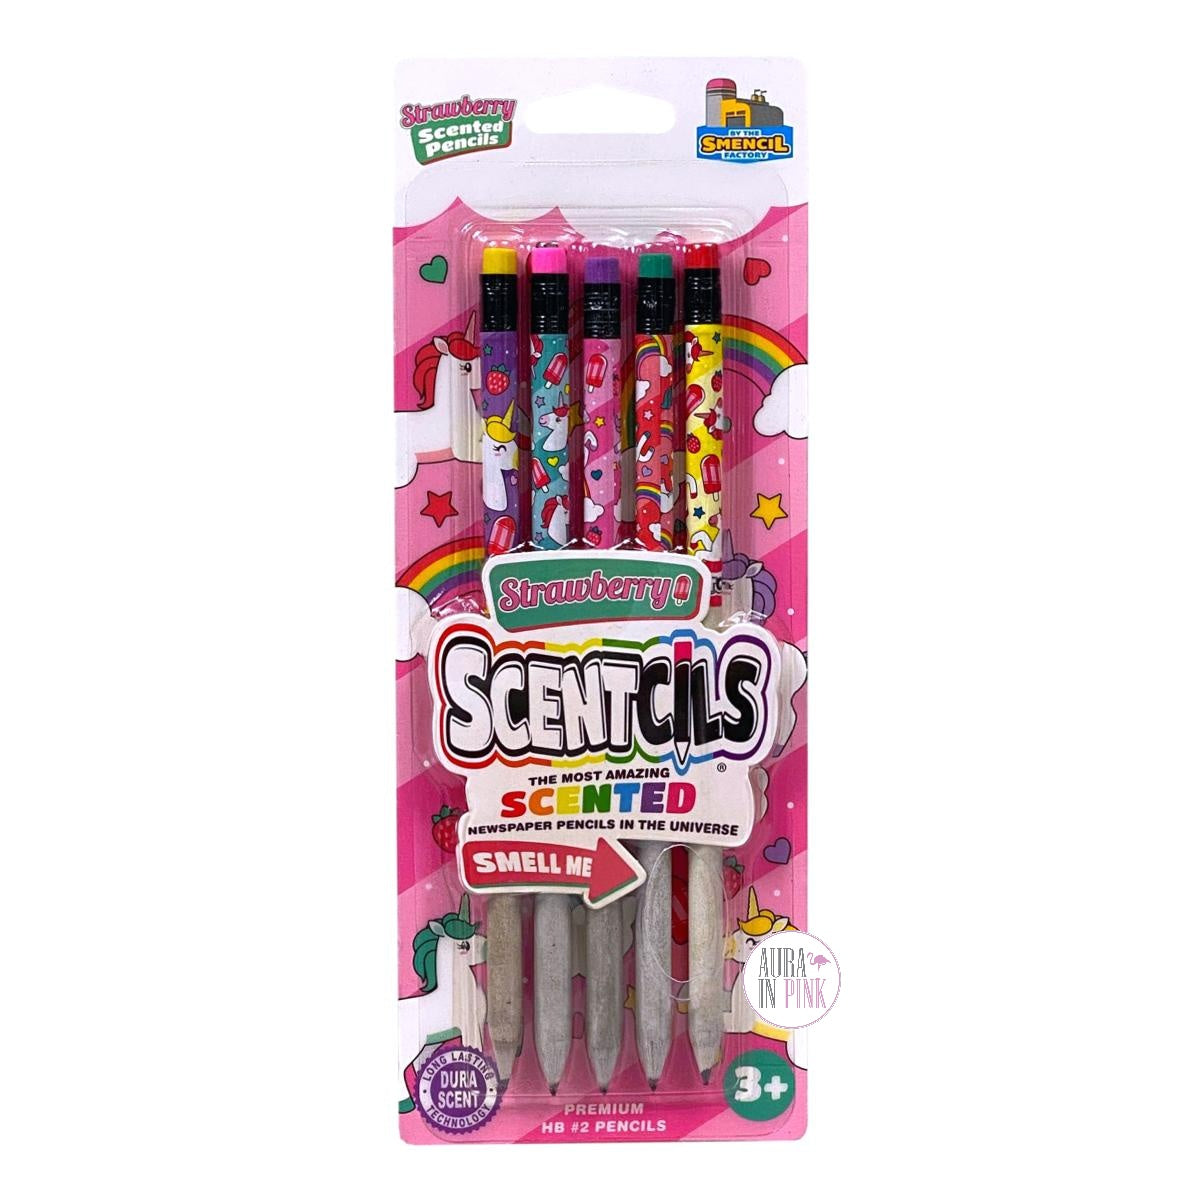 Scentco, Smencils Scented Pencil